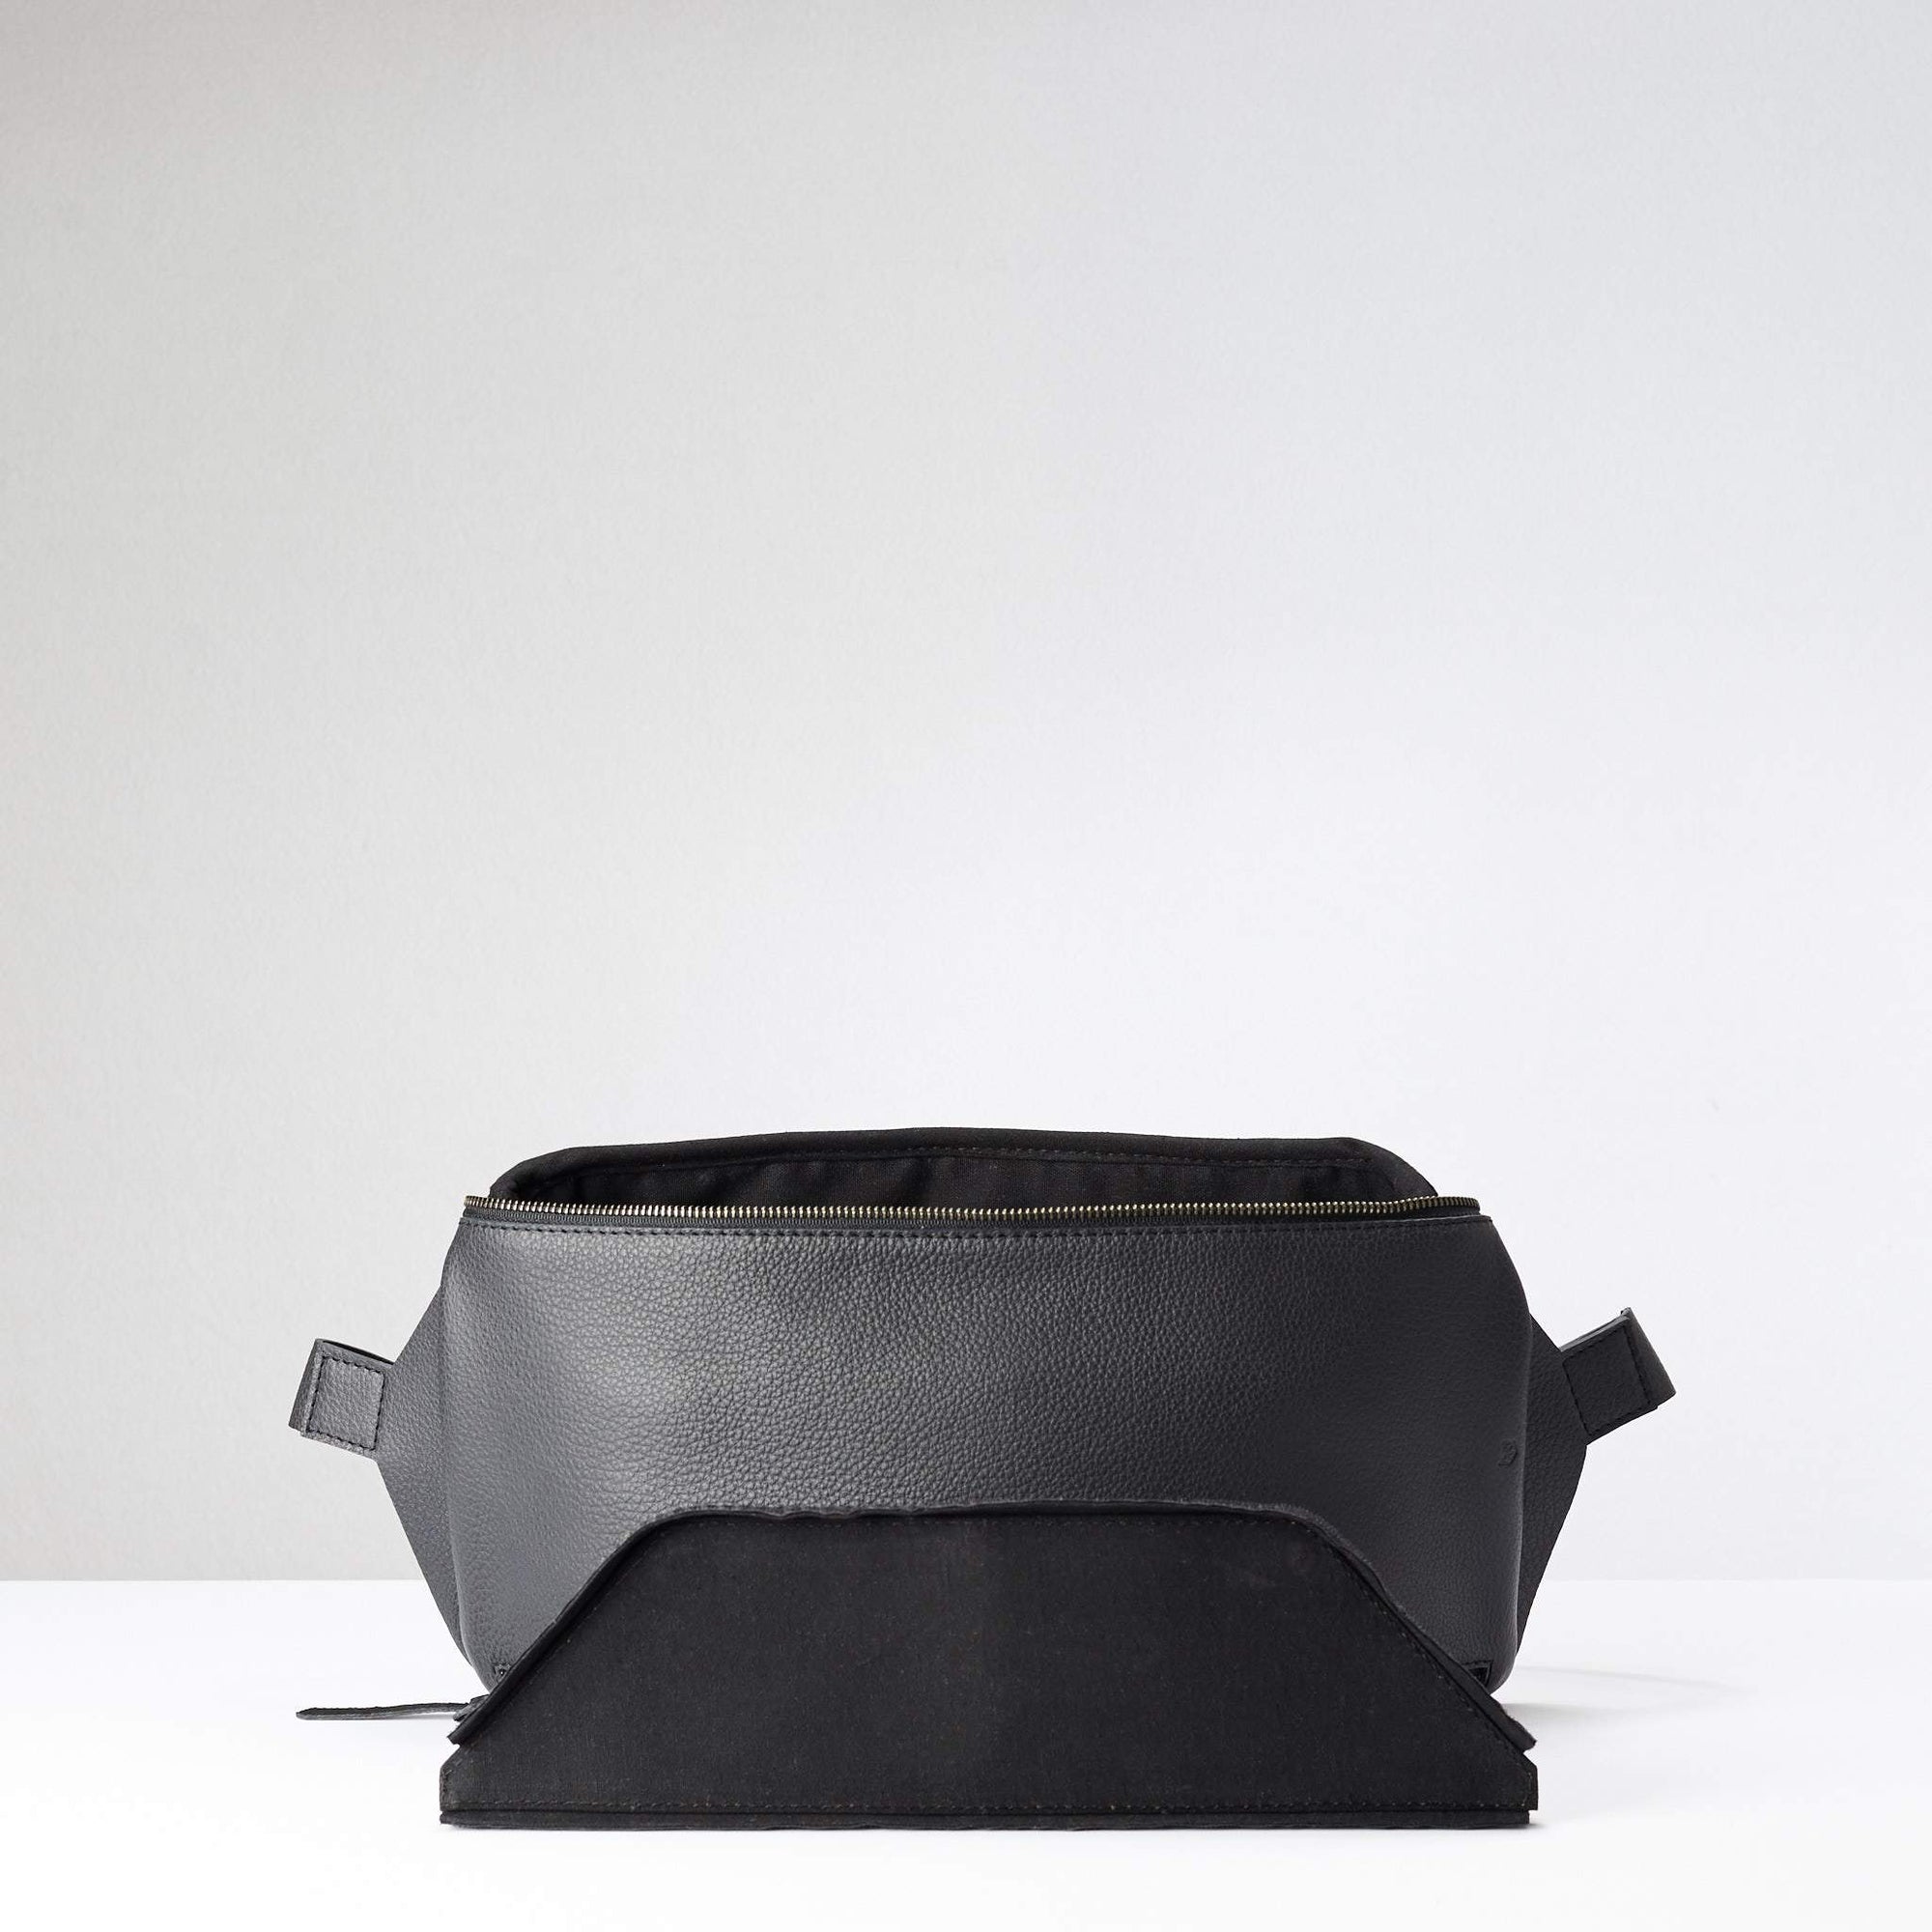 Detachable divider. Fenek Sling Bag Black by Capra Leather